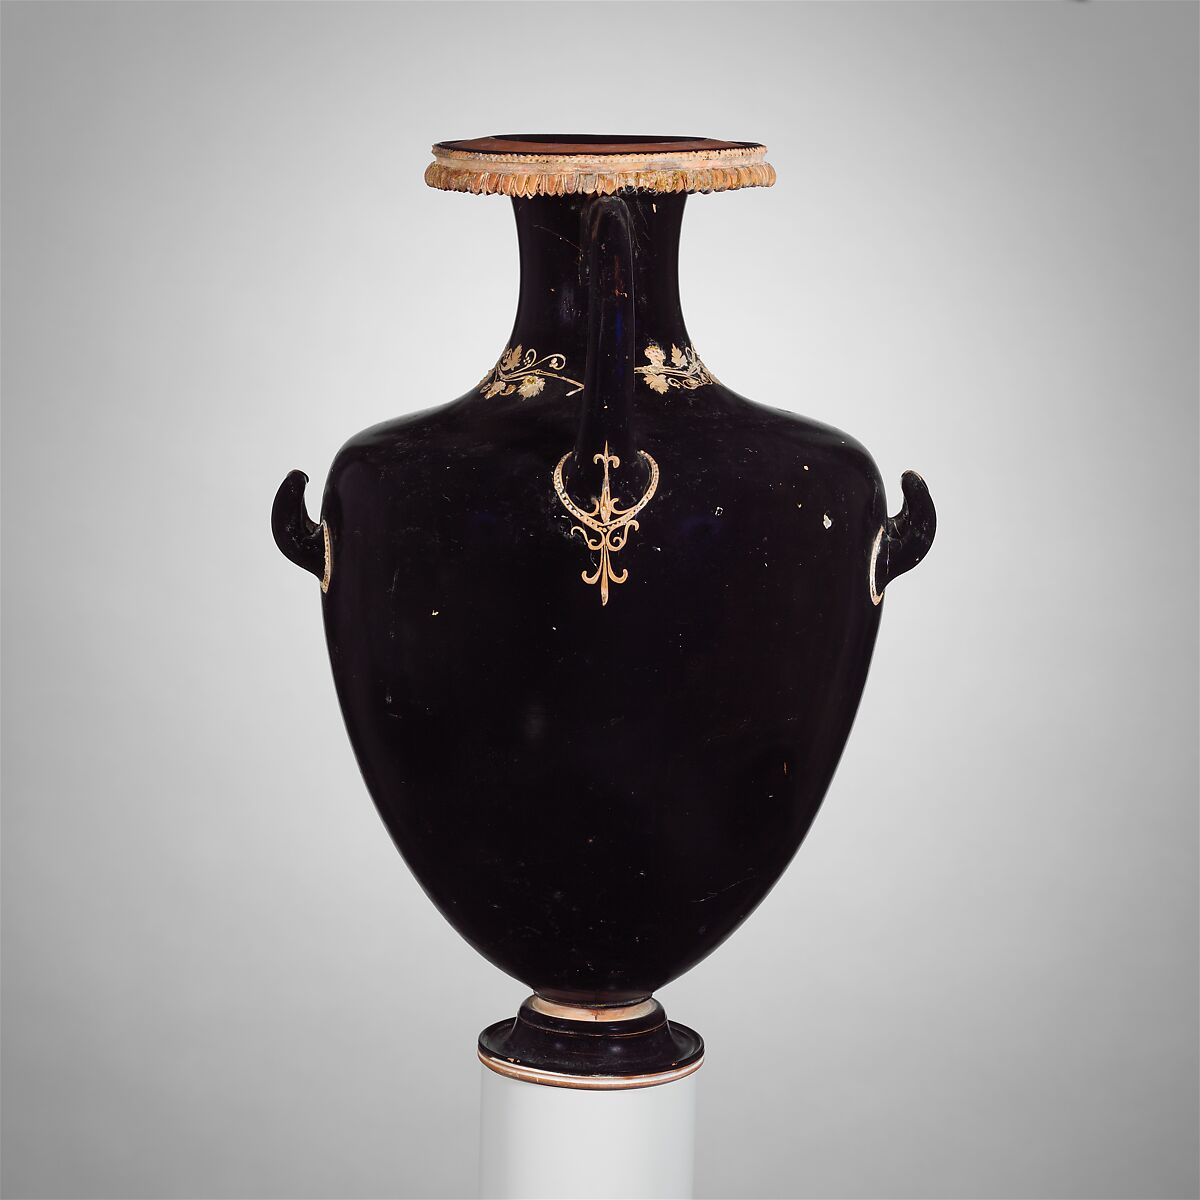 Terracotta hydria (water jar), Terracotta, Greek, Attic